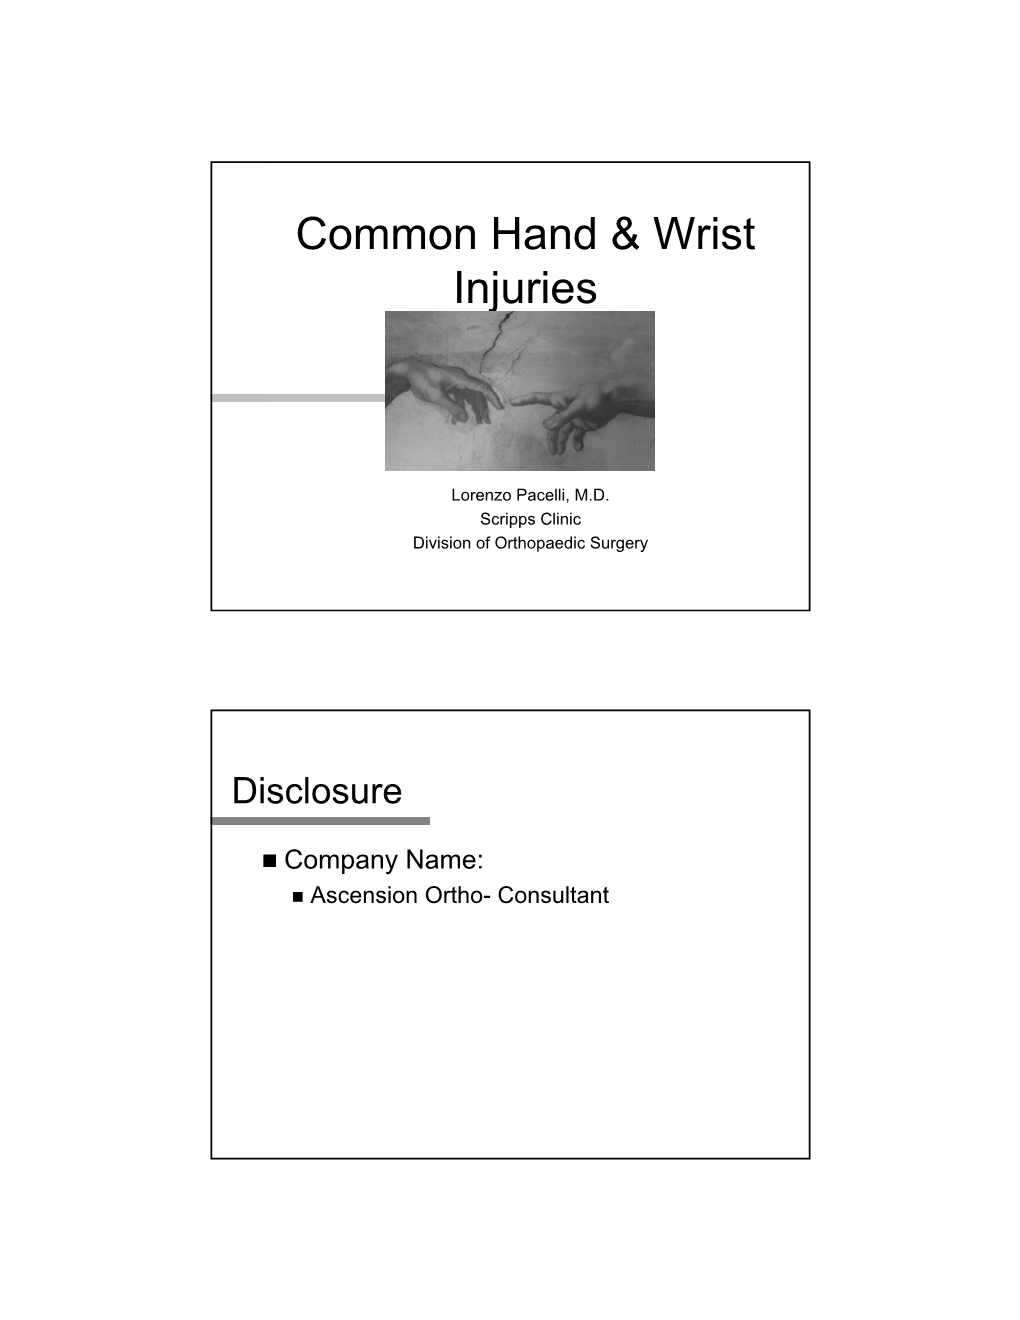 Common Hand & Wrist Injuries